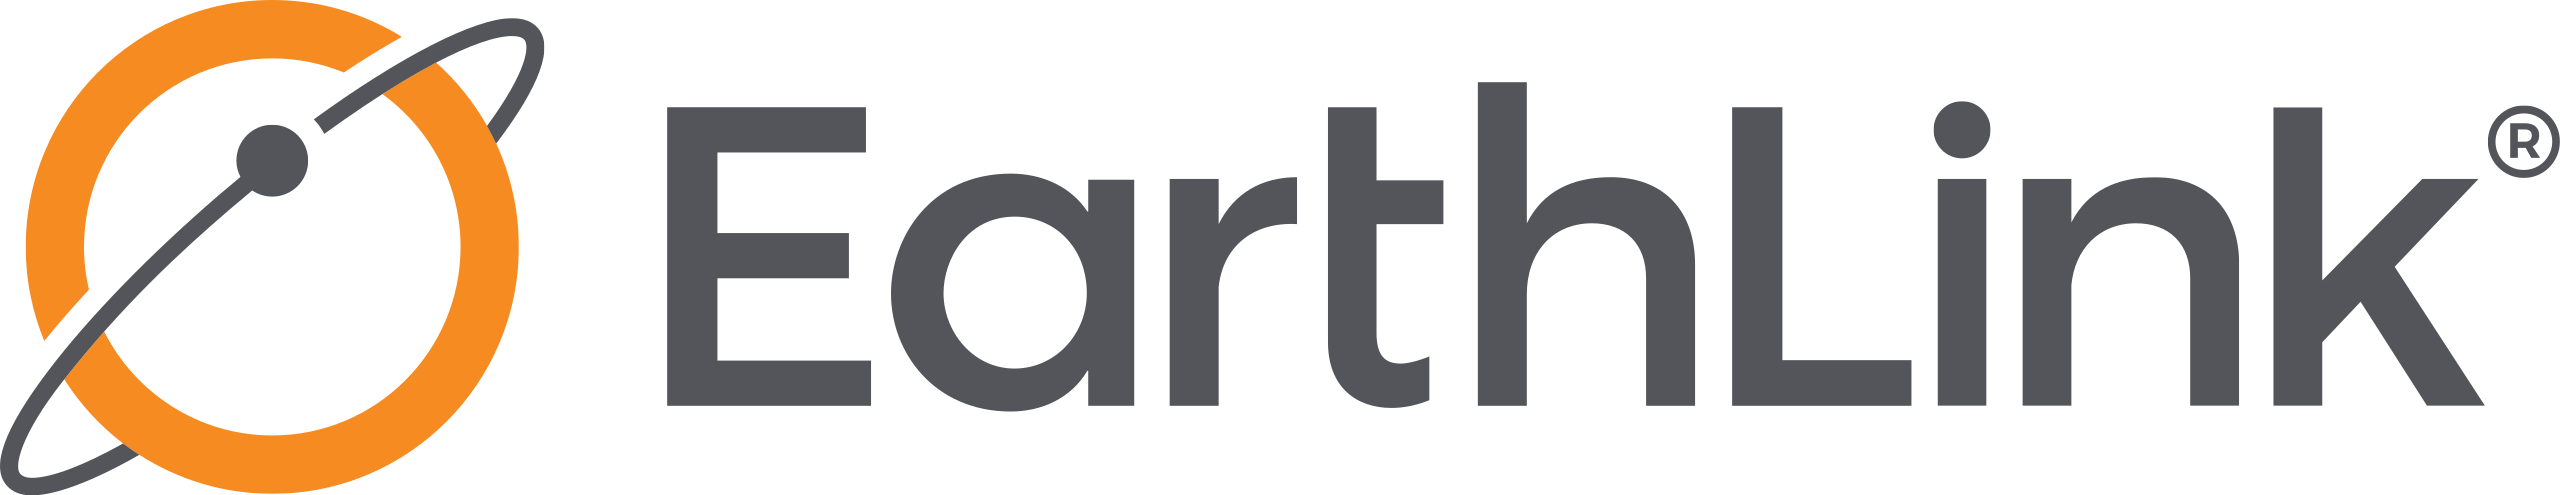 Earthlink_logo